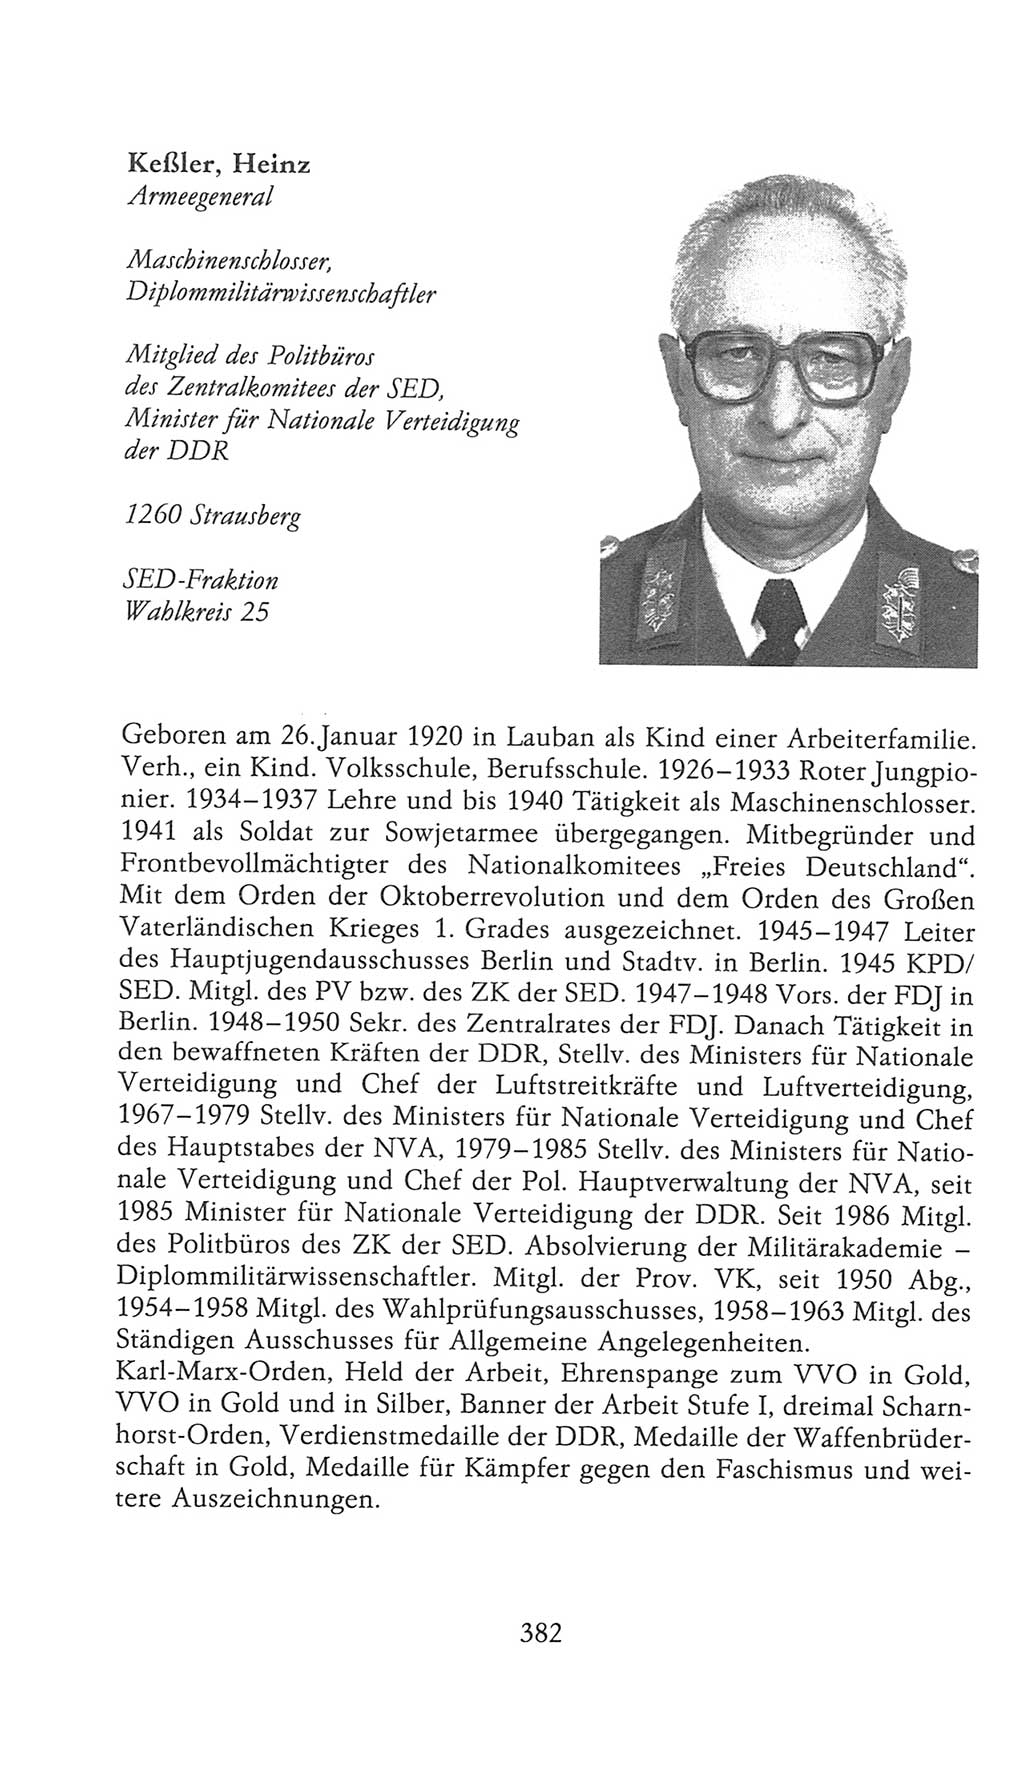 Volkskammer (VK) der Deutschen Demokratischen Republik (DDR), 9. Wahlperiode 1986-1990, Seite 382 (VK. DDR 9. WP. 1986-1990, S. 382)